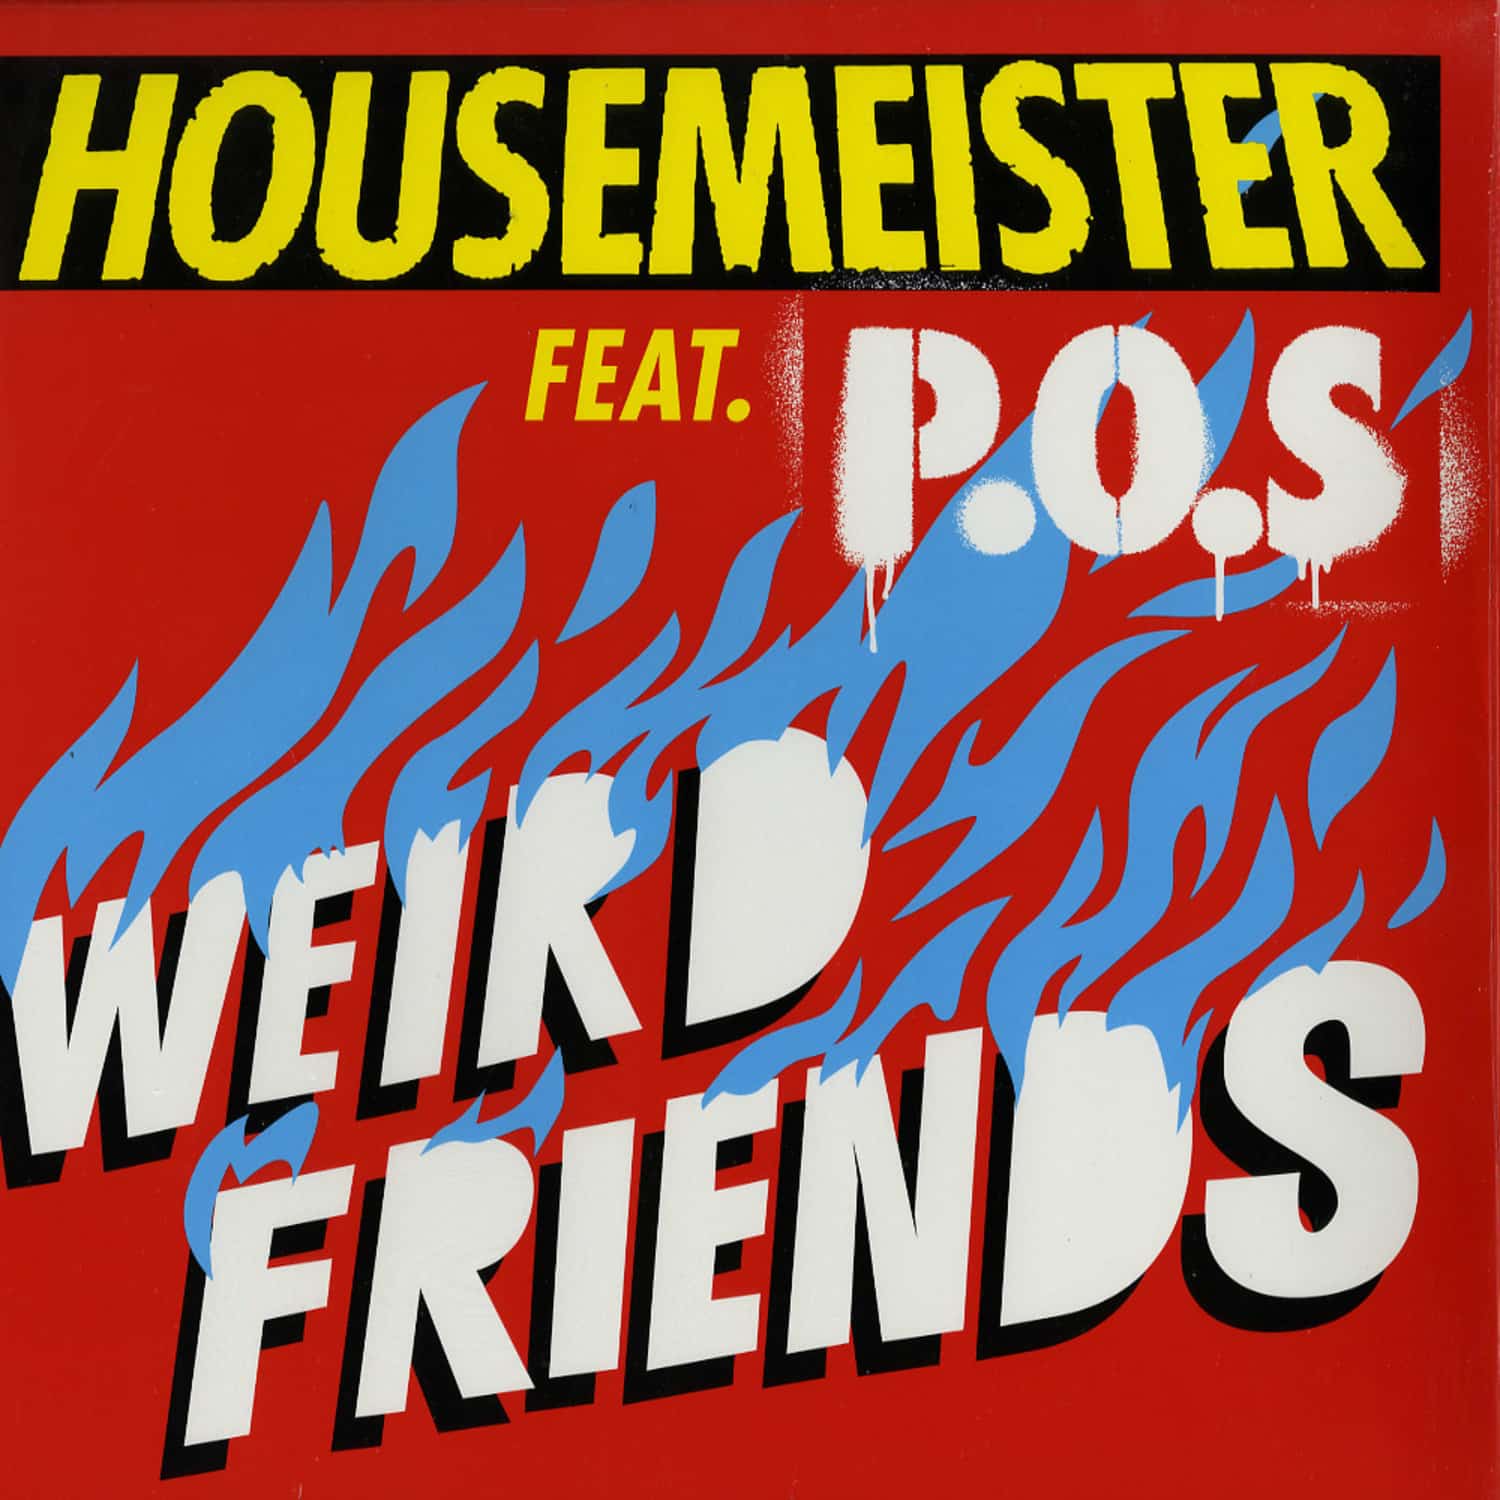 Housemeister feat. P.O.S. - WEIRD FRIENDS